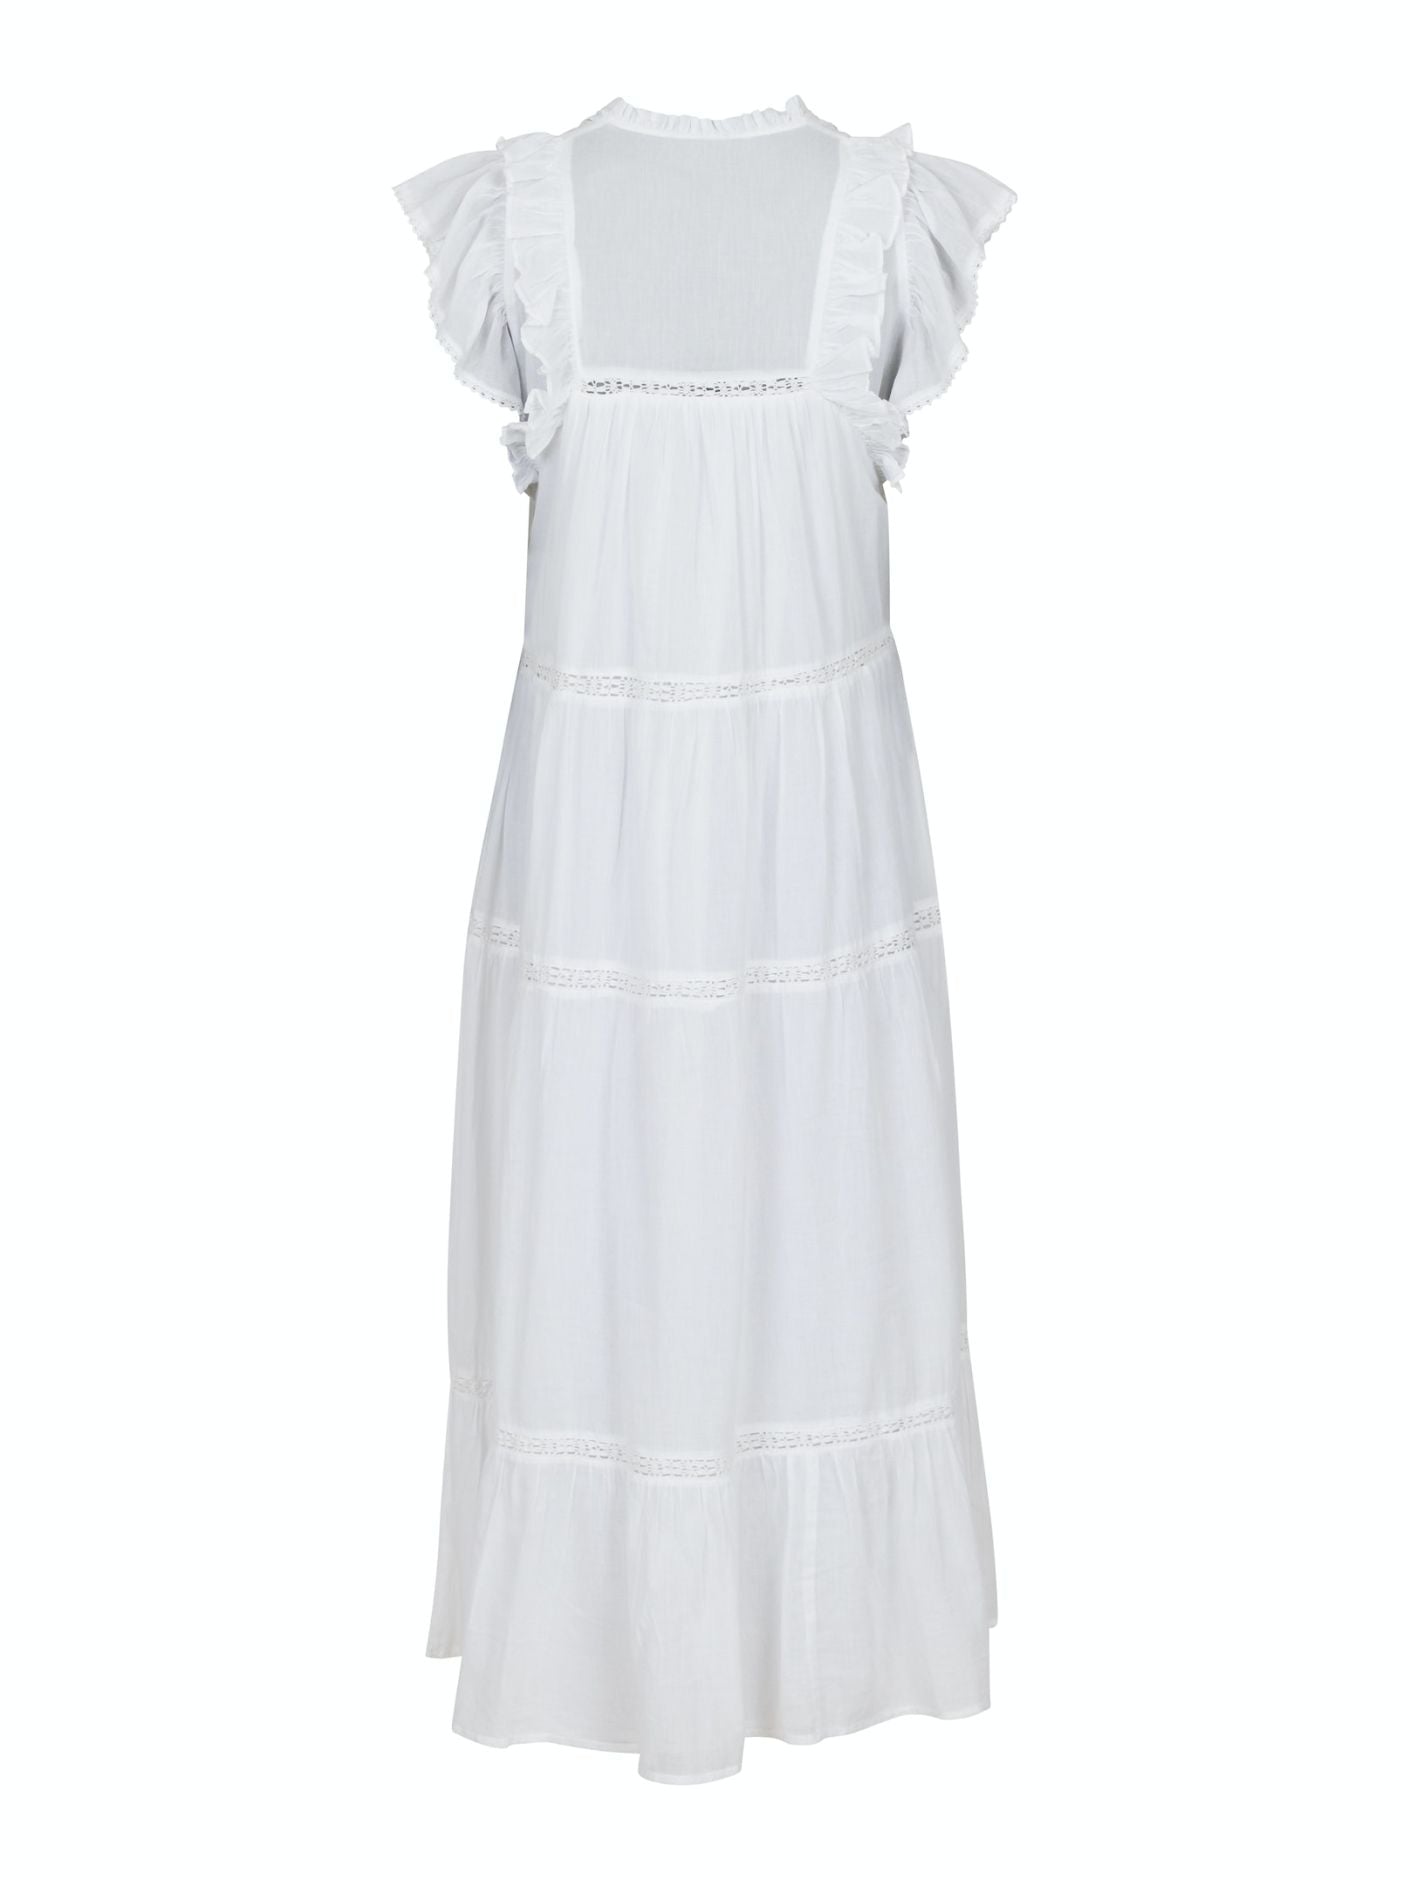 Ankita S Voile Dress White